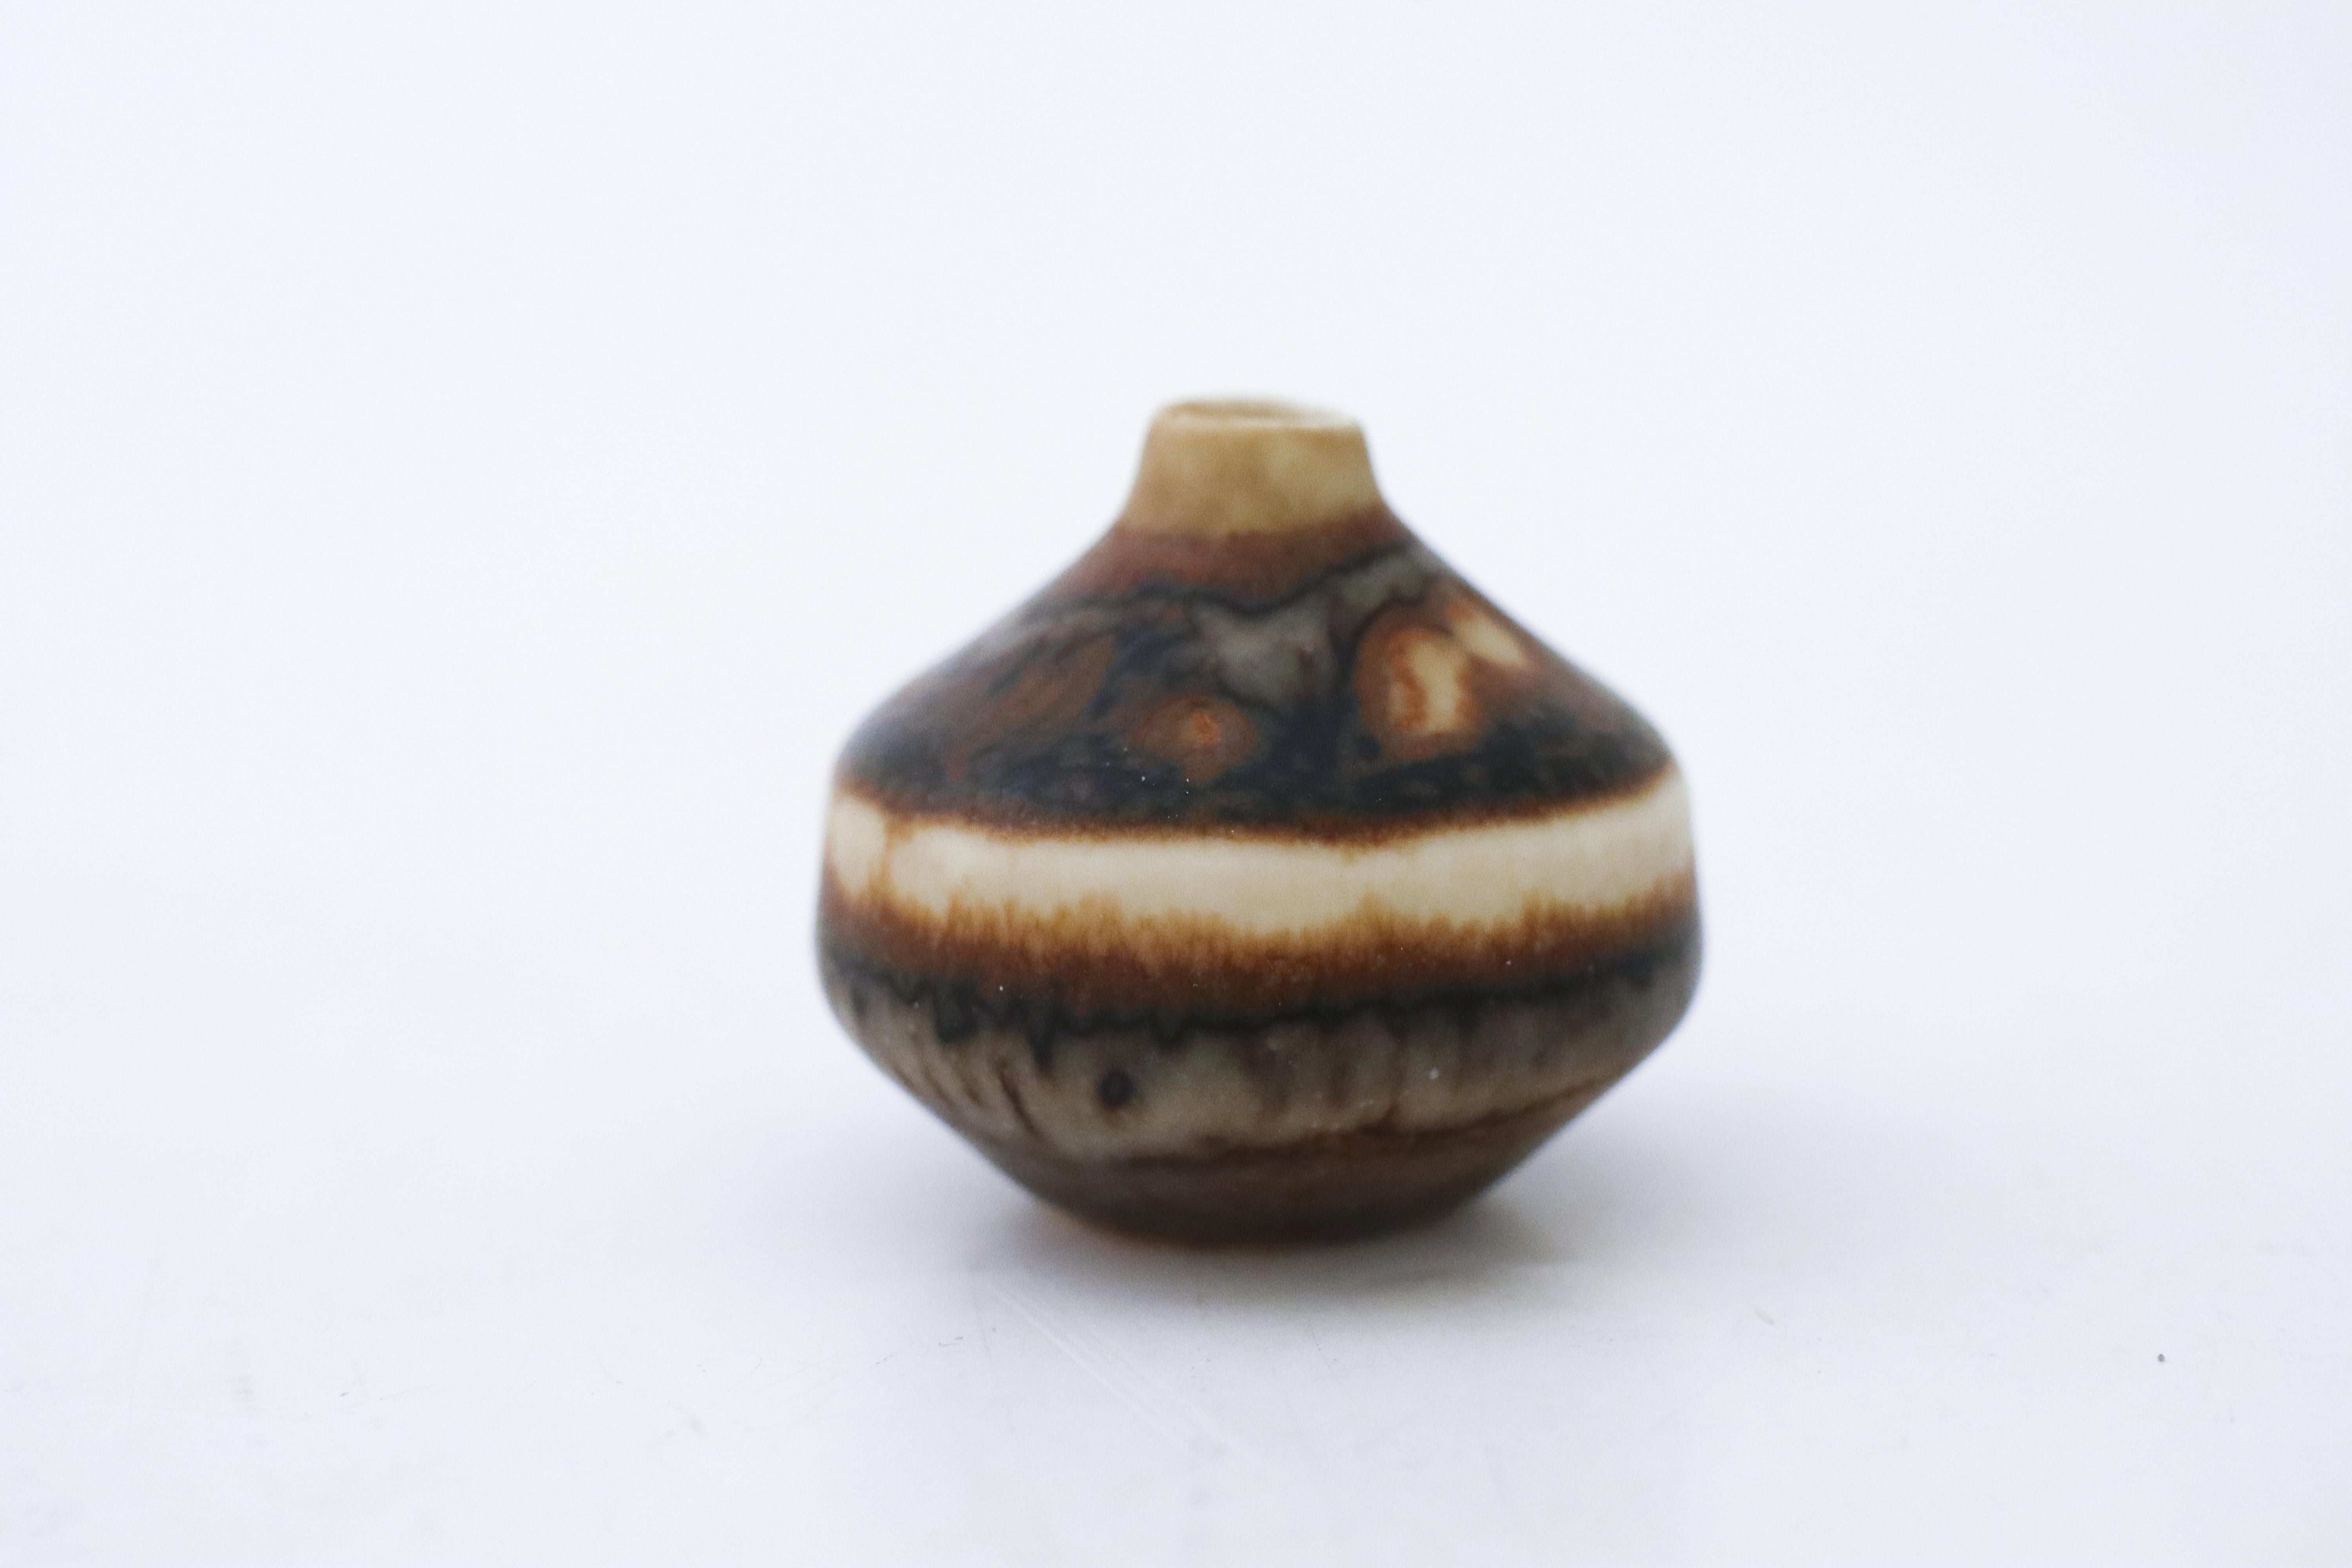 Eine braune Miniaturvase, entworfen von Carl-Harry Stålhane in Rörstrand, 3,5 cm hoch und in sehr gutem Zustand, gekennzeichnet als 1. 

Carl-Harry Stålhane ist einer der führenden Namen, wenn es um skandinavische Keramik aus der Mitte des